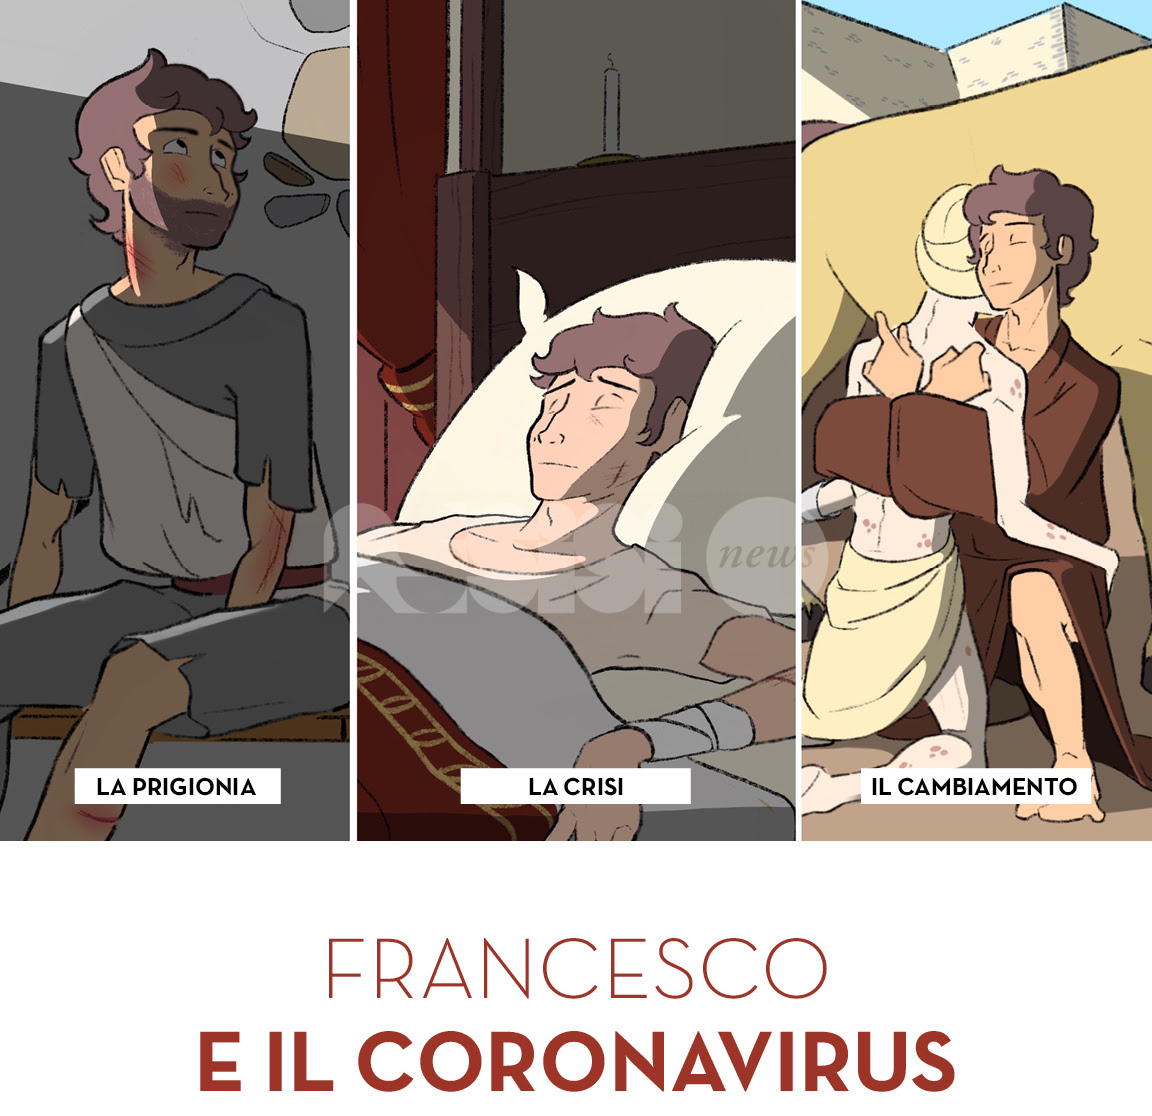 Francesco e il coronavirus, ad Assisi verrà presentato un nuovo progetto didattico